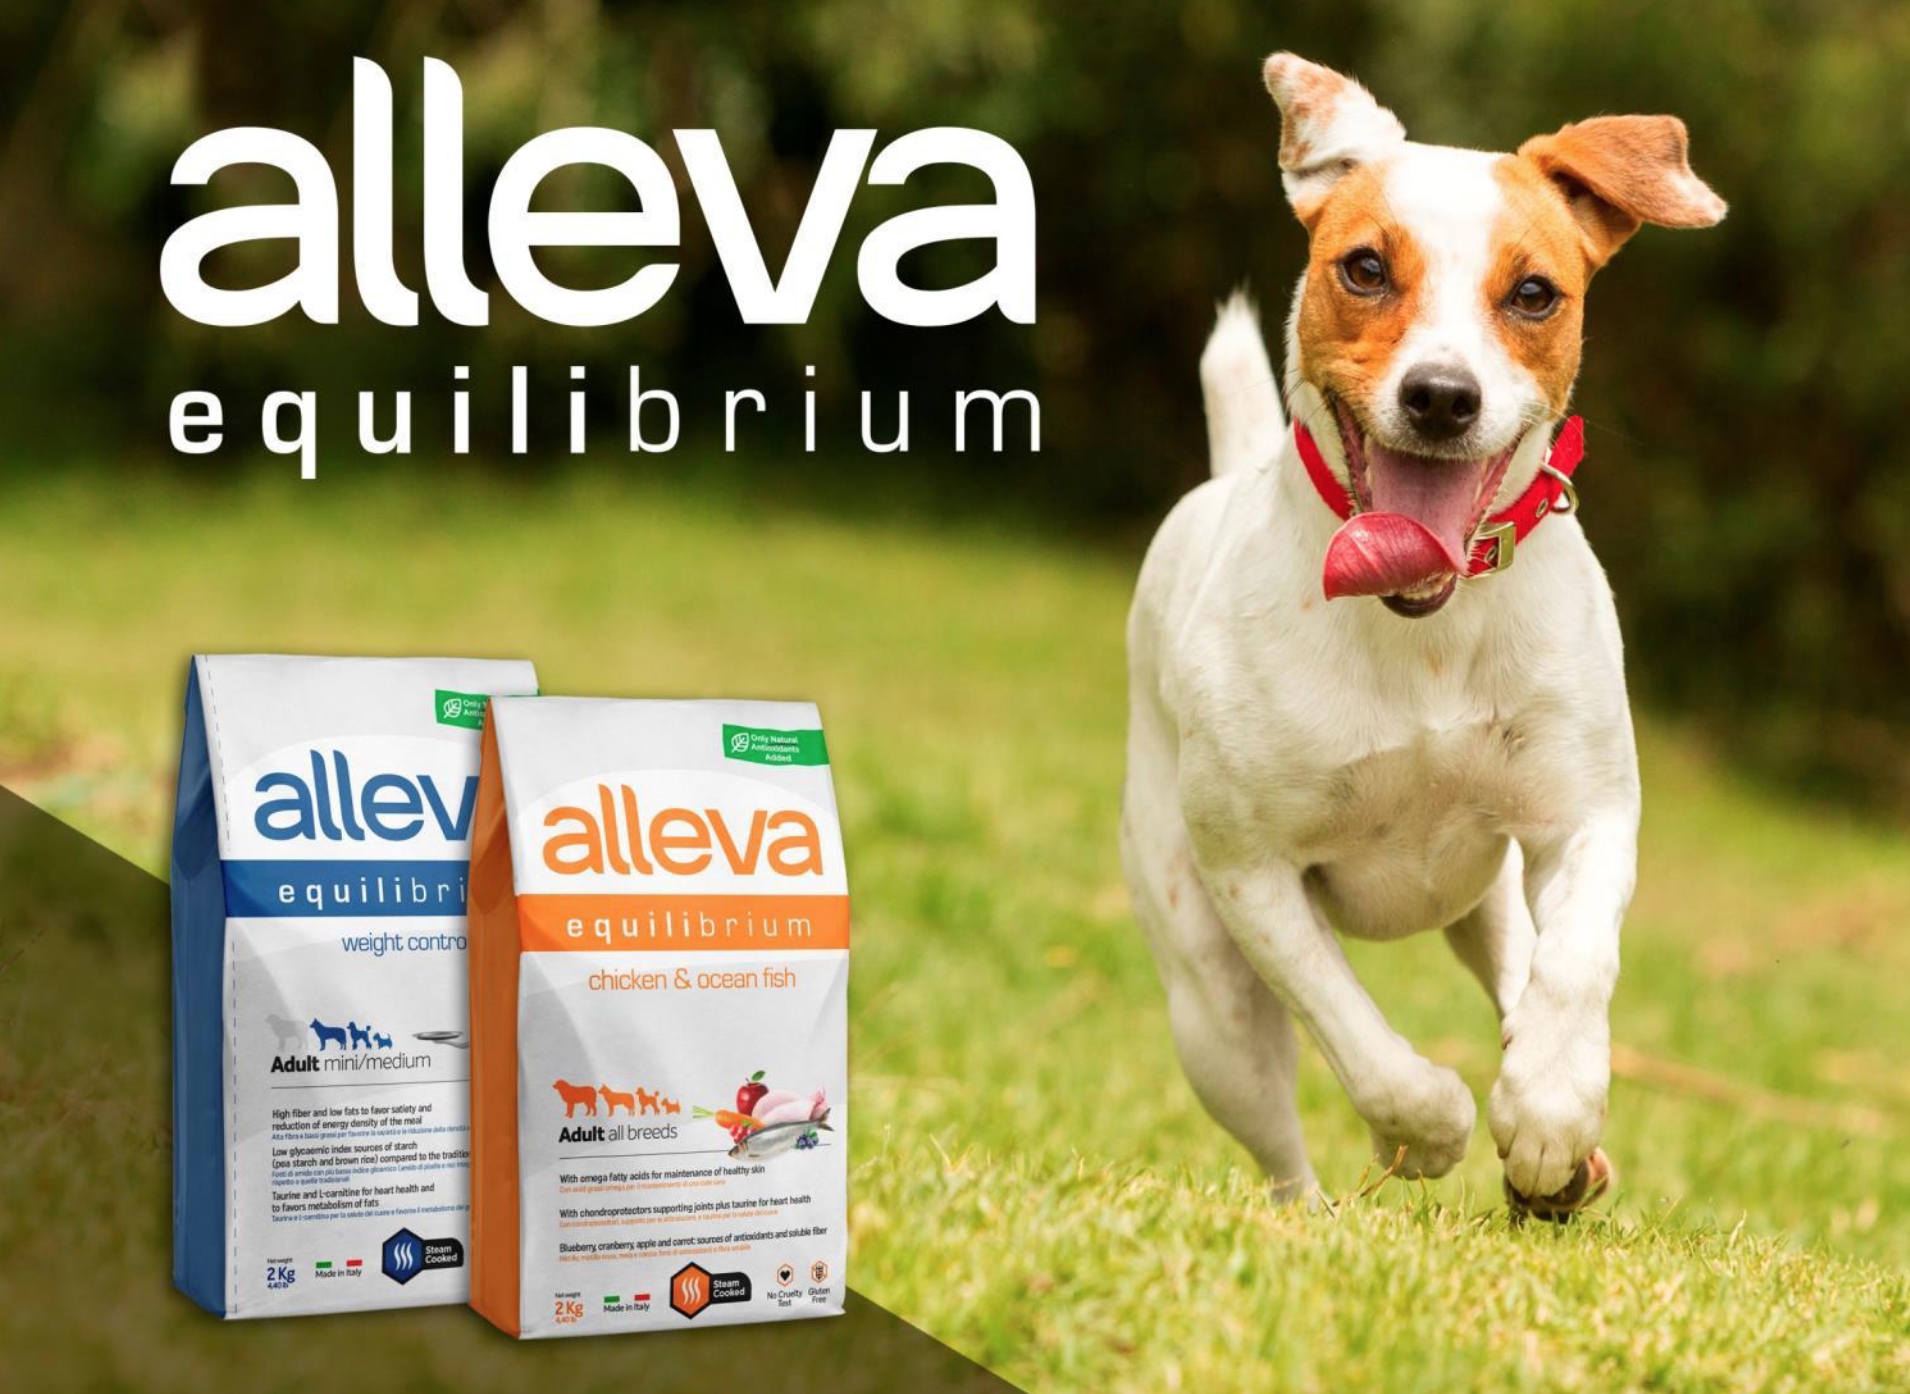 купить Сухой корм Alleva Equilibrium для собак (Италия) с бесплатной доставкой в Калининграде